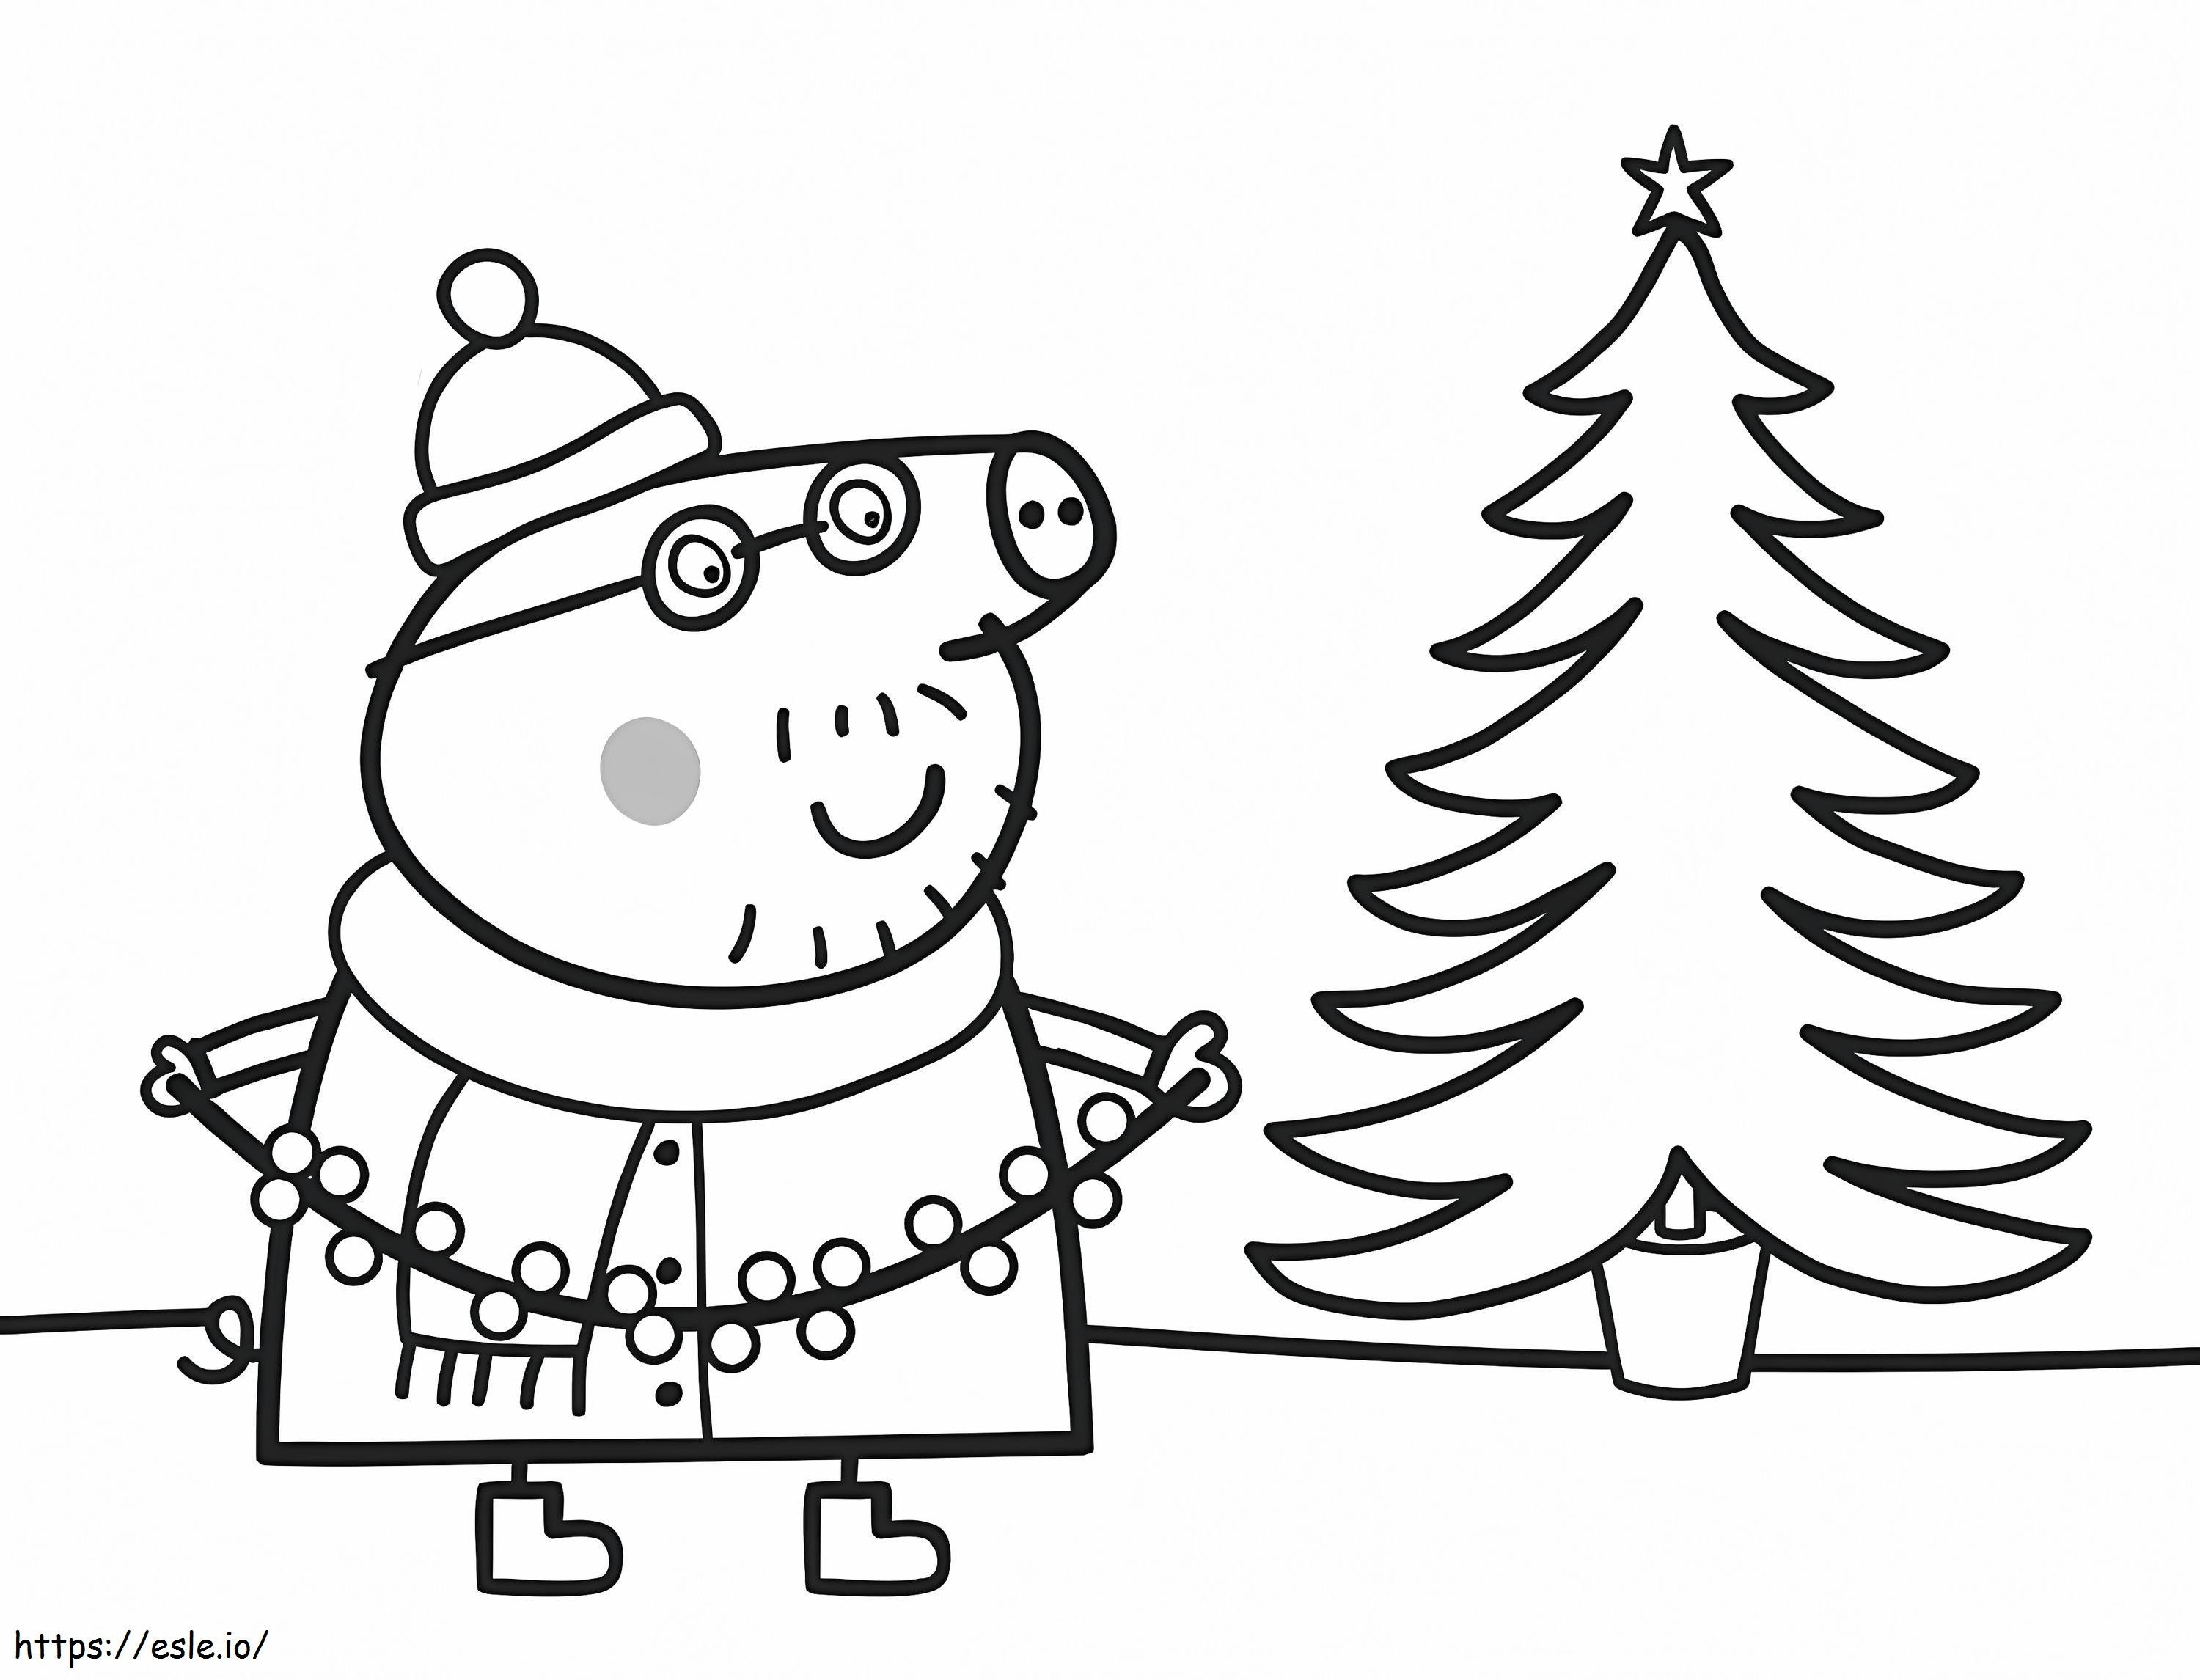 Coloriage Papa cochon avec arbre de Noël à imprimer dessin